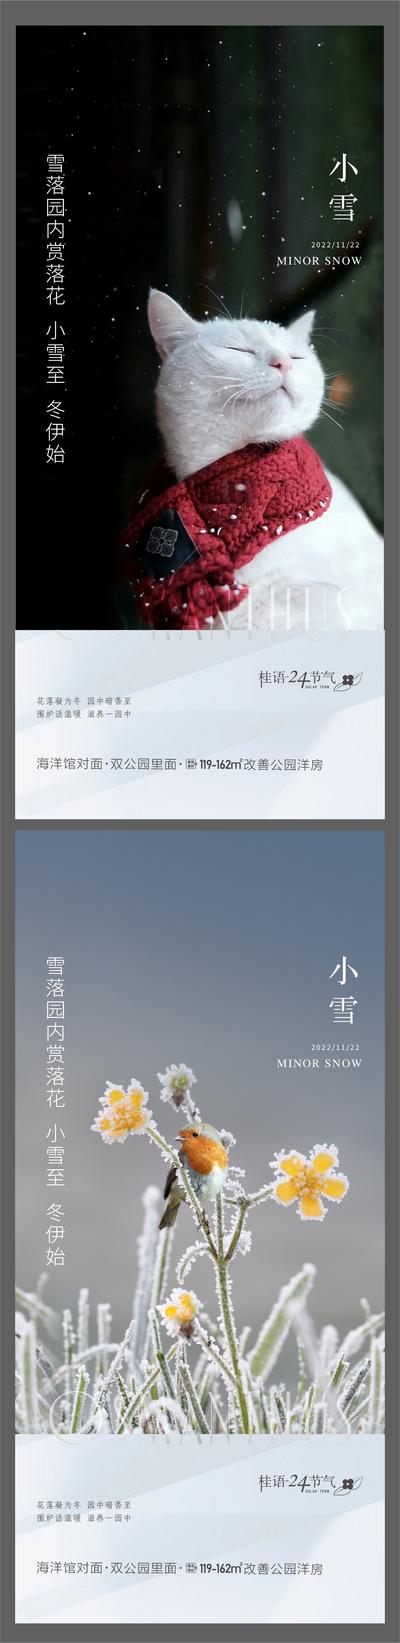 南门网 广告 海报 节气 小雪 大雪 猫咪 系列 清新